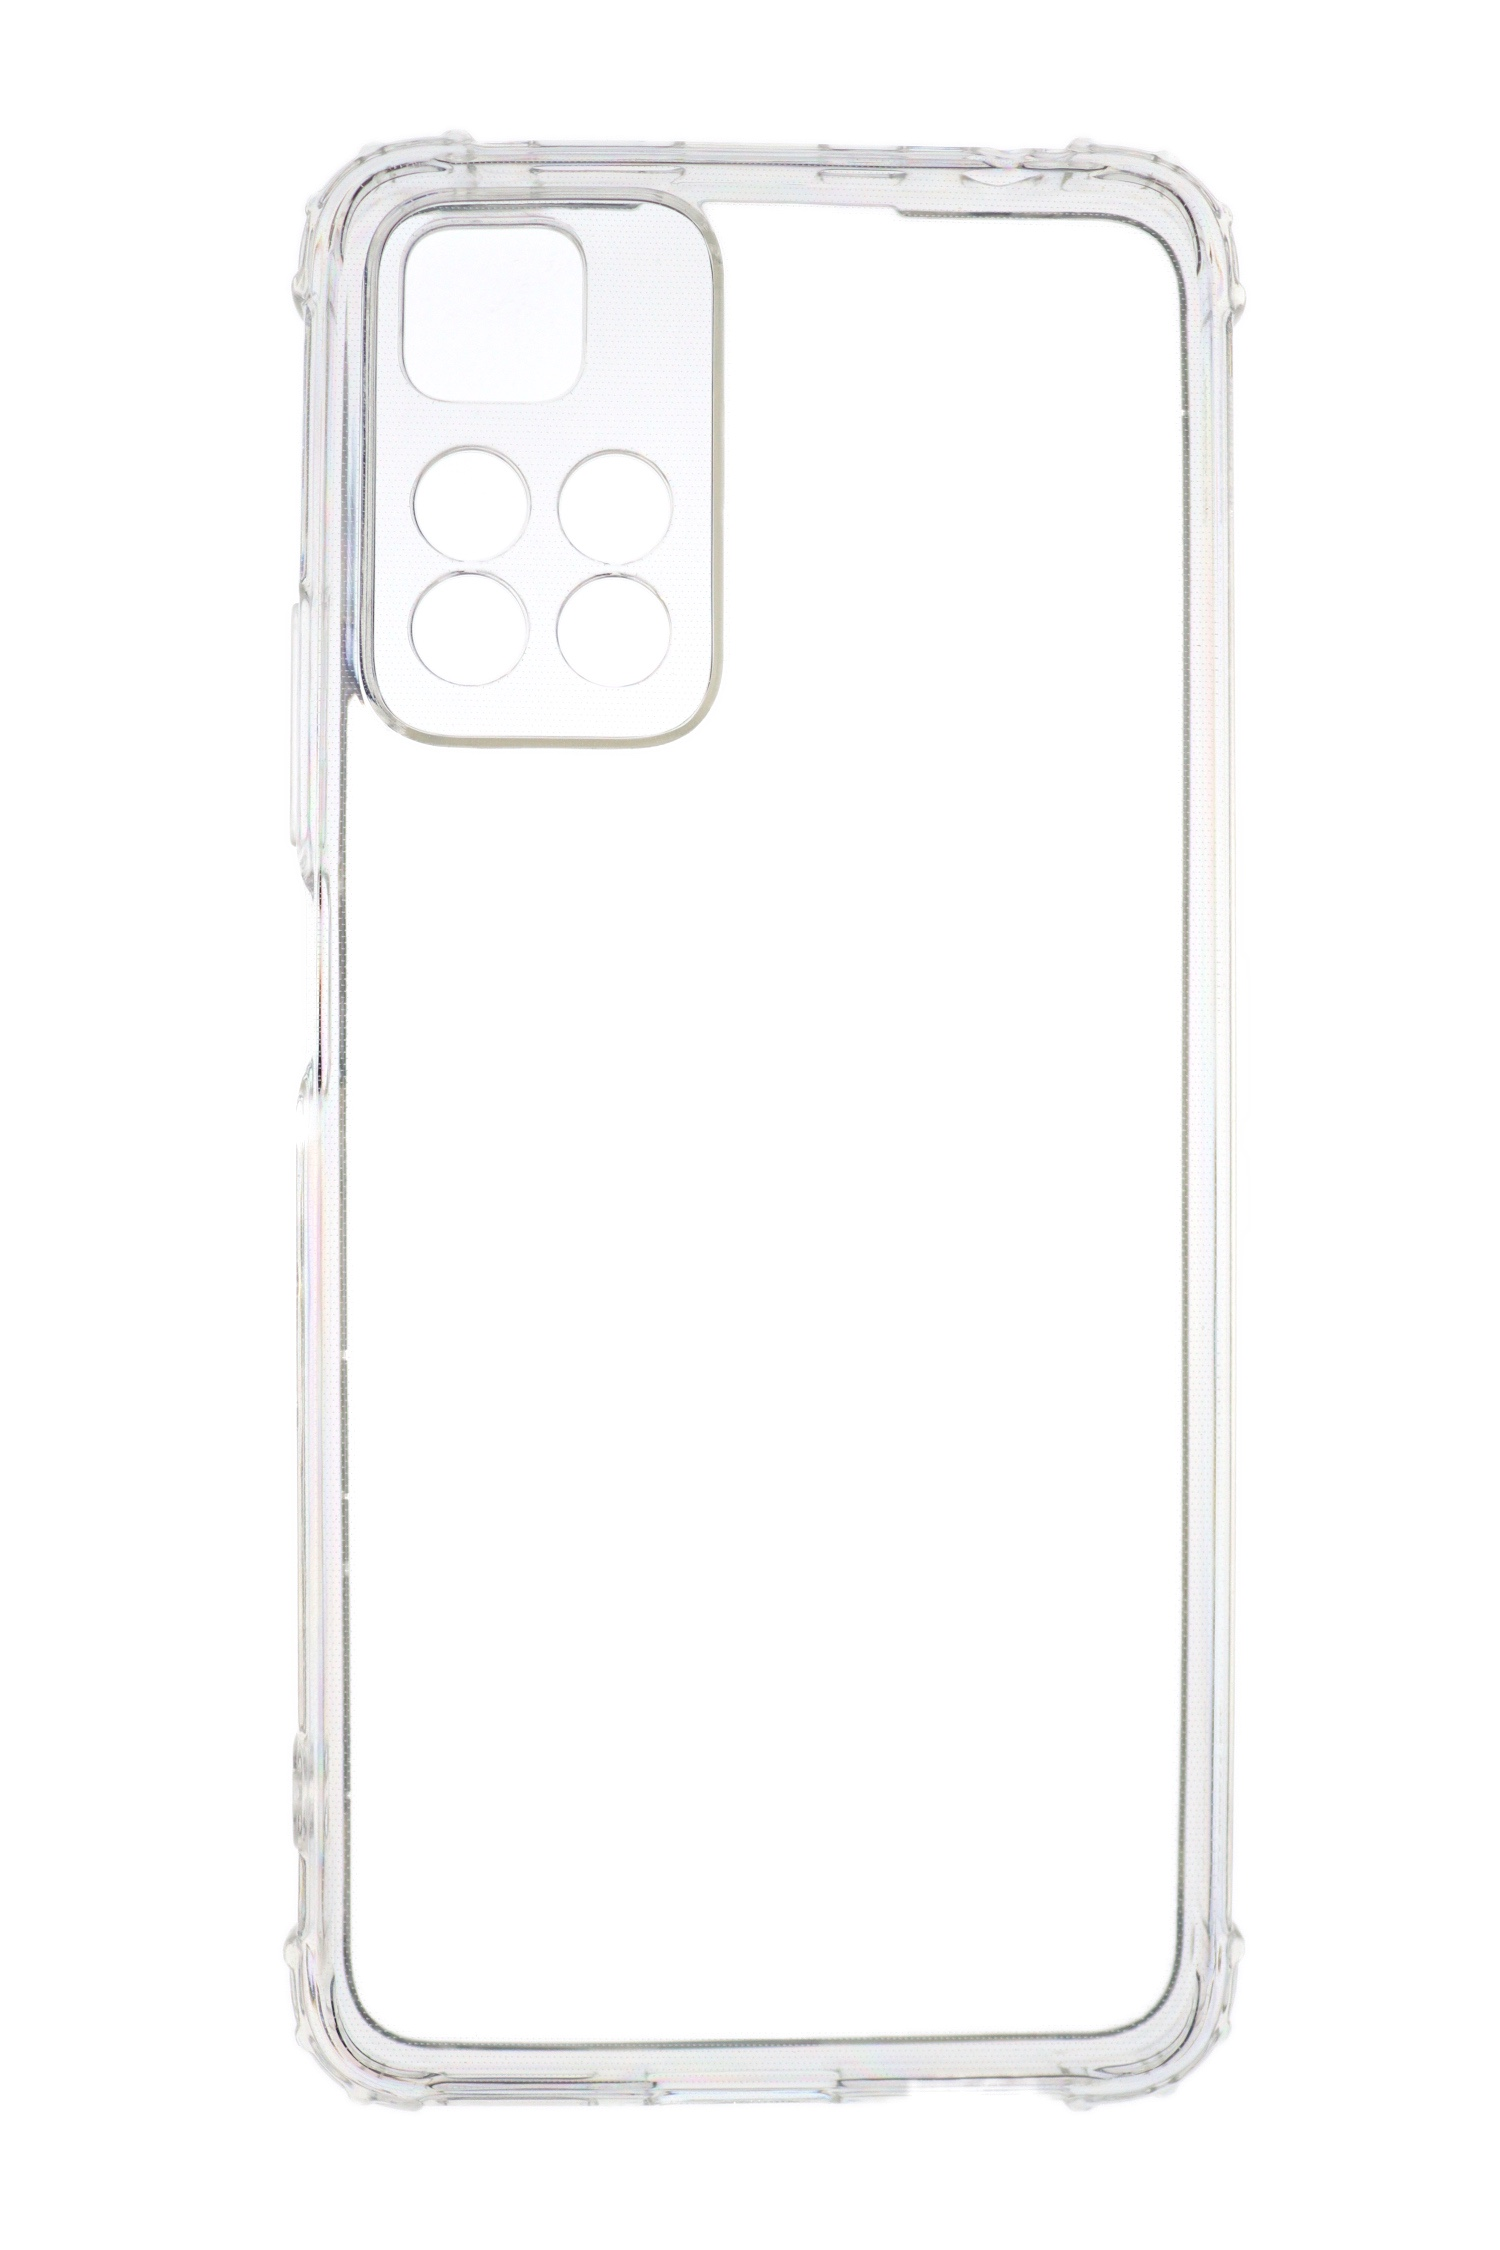 JAMCOVER 1.5 Backcover, TPU 11 mm Shock Redmi Case, Transparent Anti Xiaomi, Pro+, Note